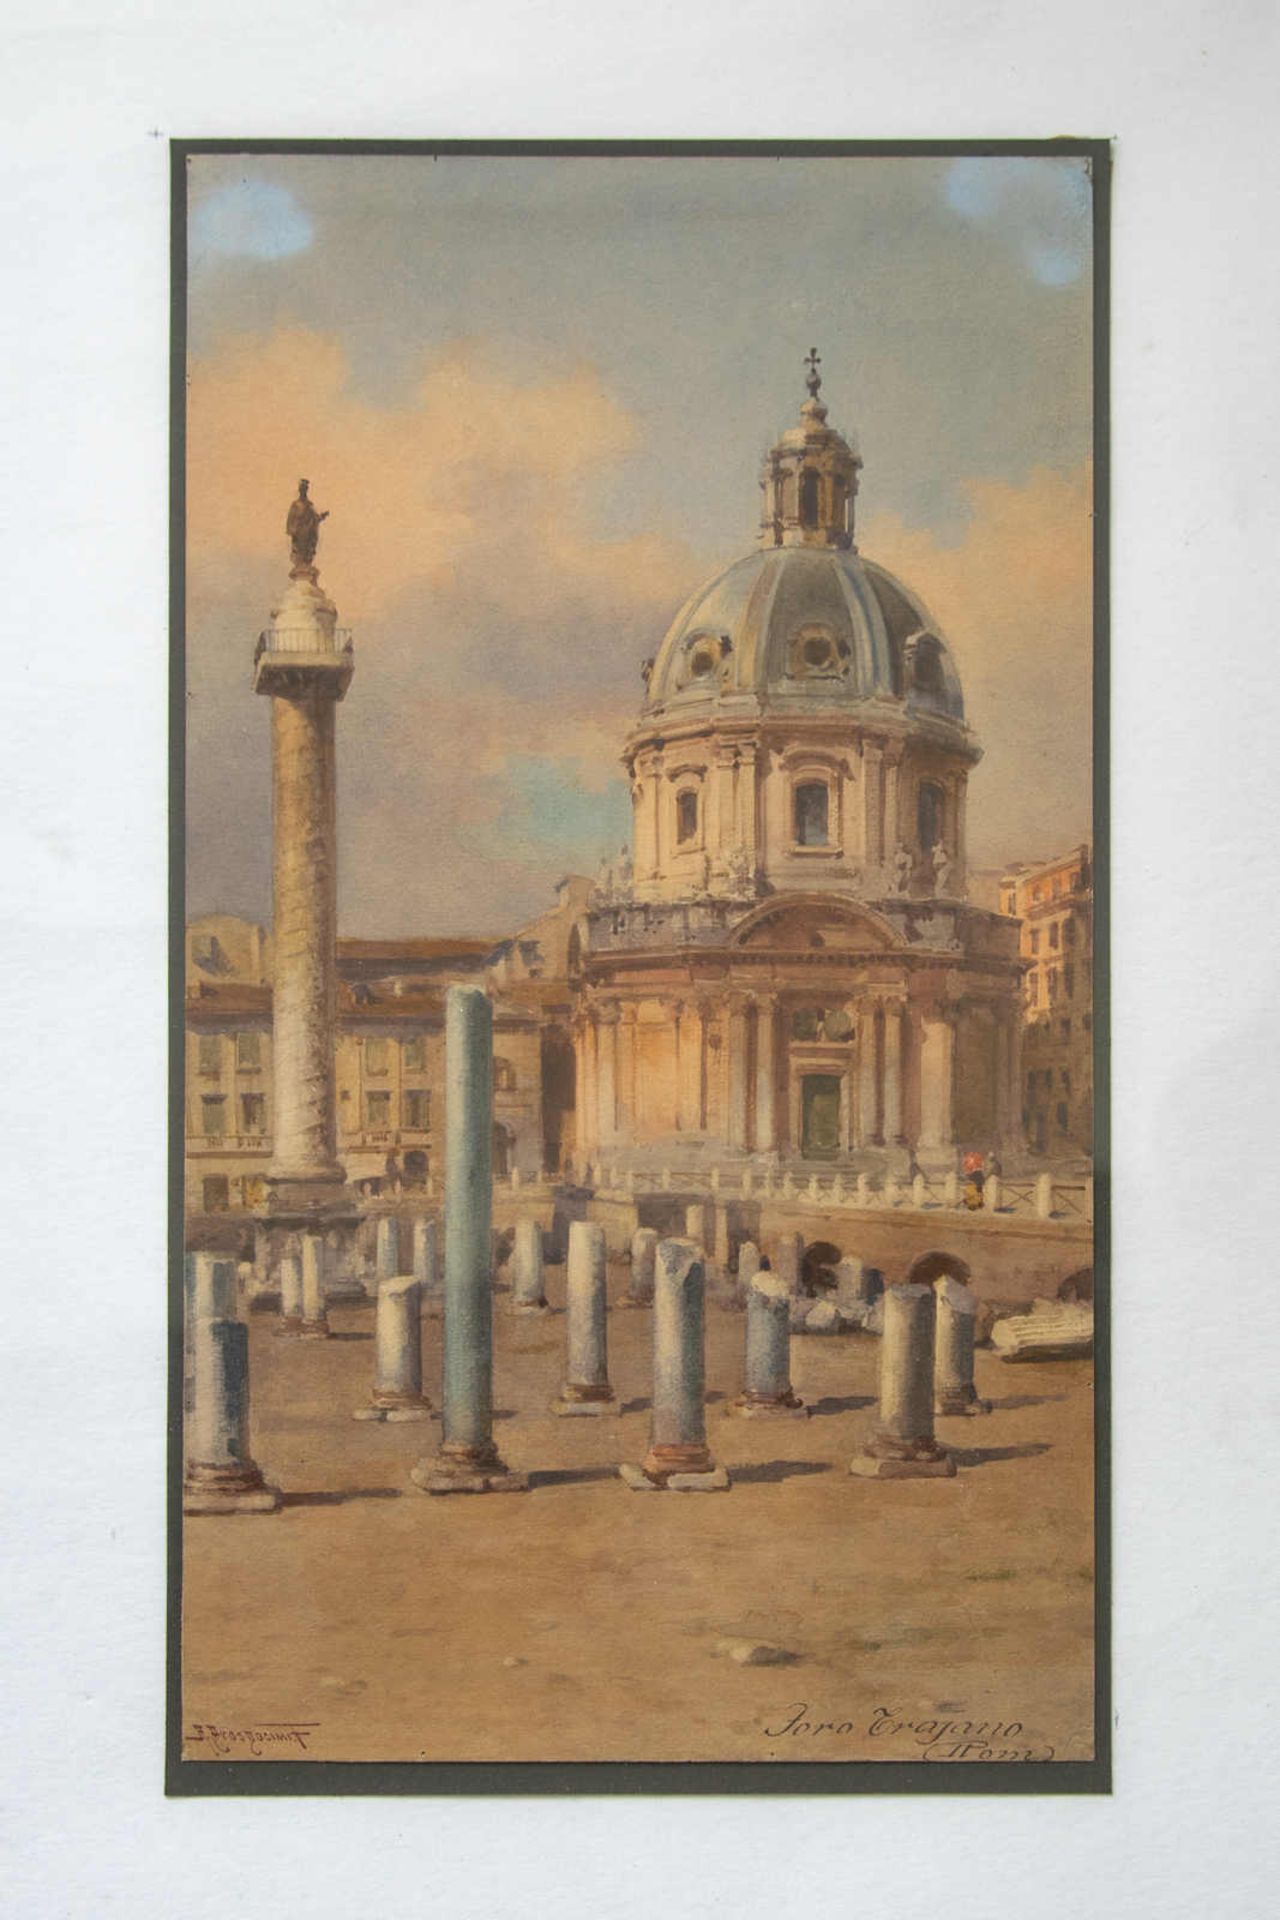 Italienische Ruinenstätte. Alberto Prosdocimi (09.09.1852 Venedig - 1925 Venedig). Aquarell auf